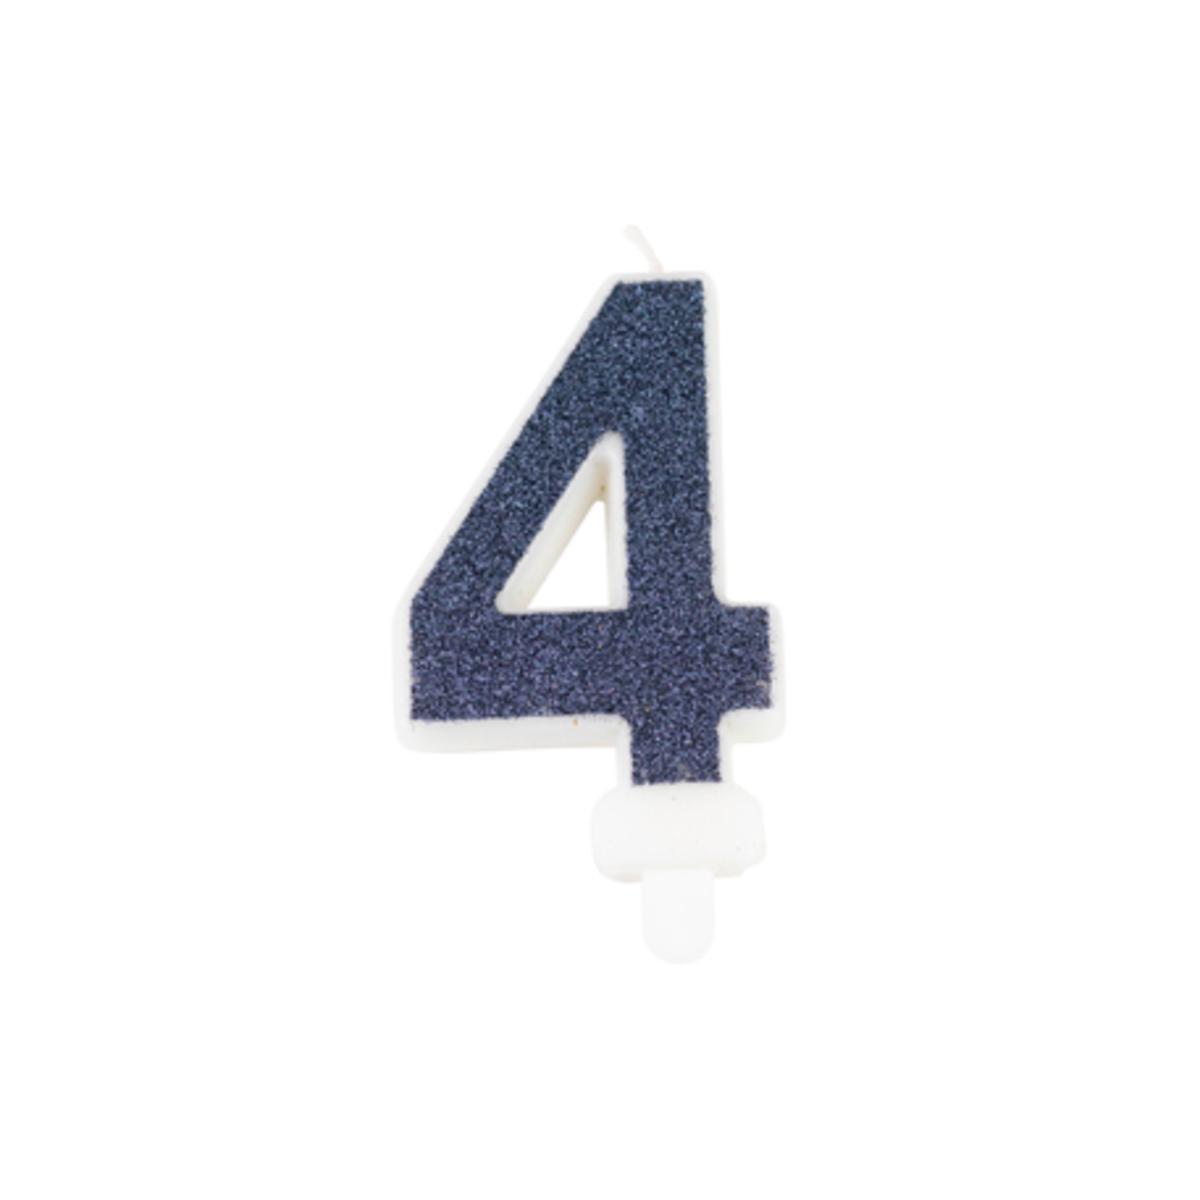 Bougie Chiffre pailletée 4 - 15 x 1.3 x 7.3 cm - Bleu